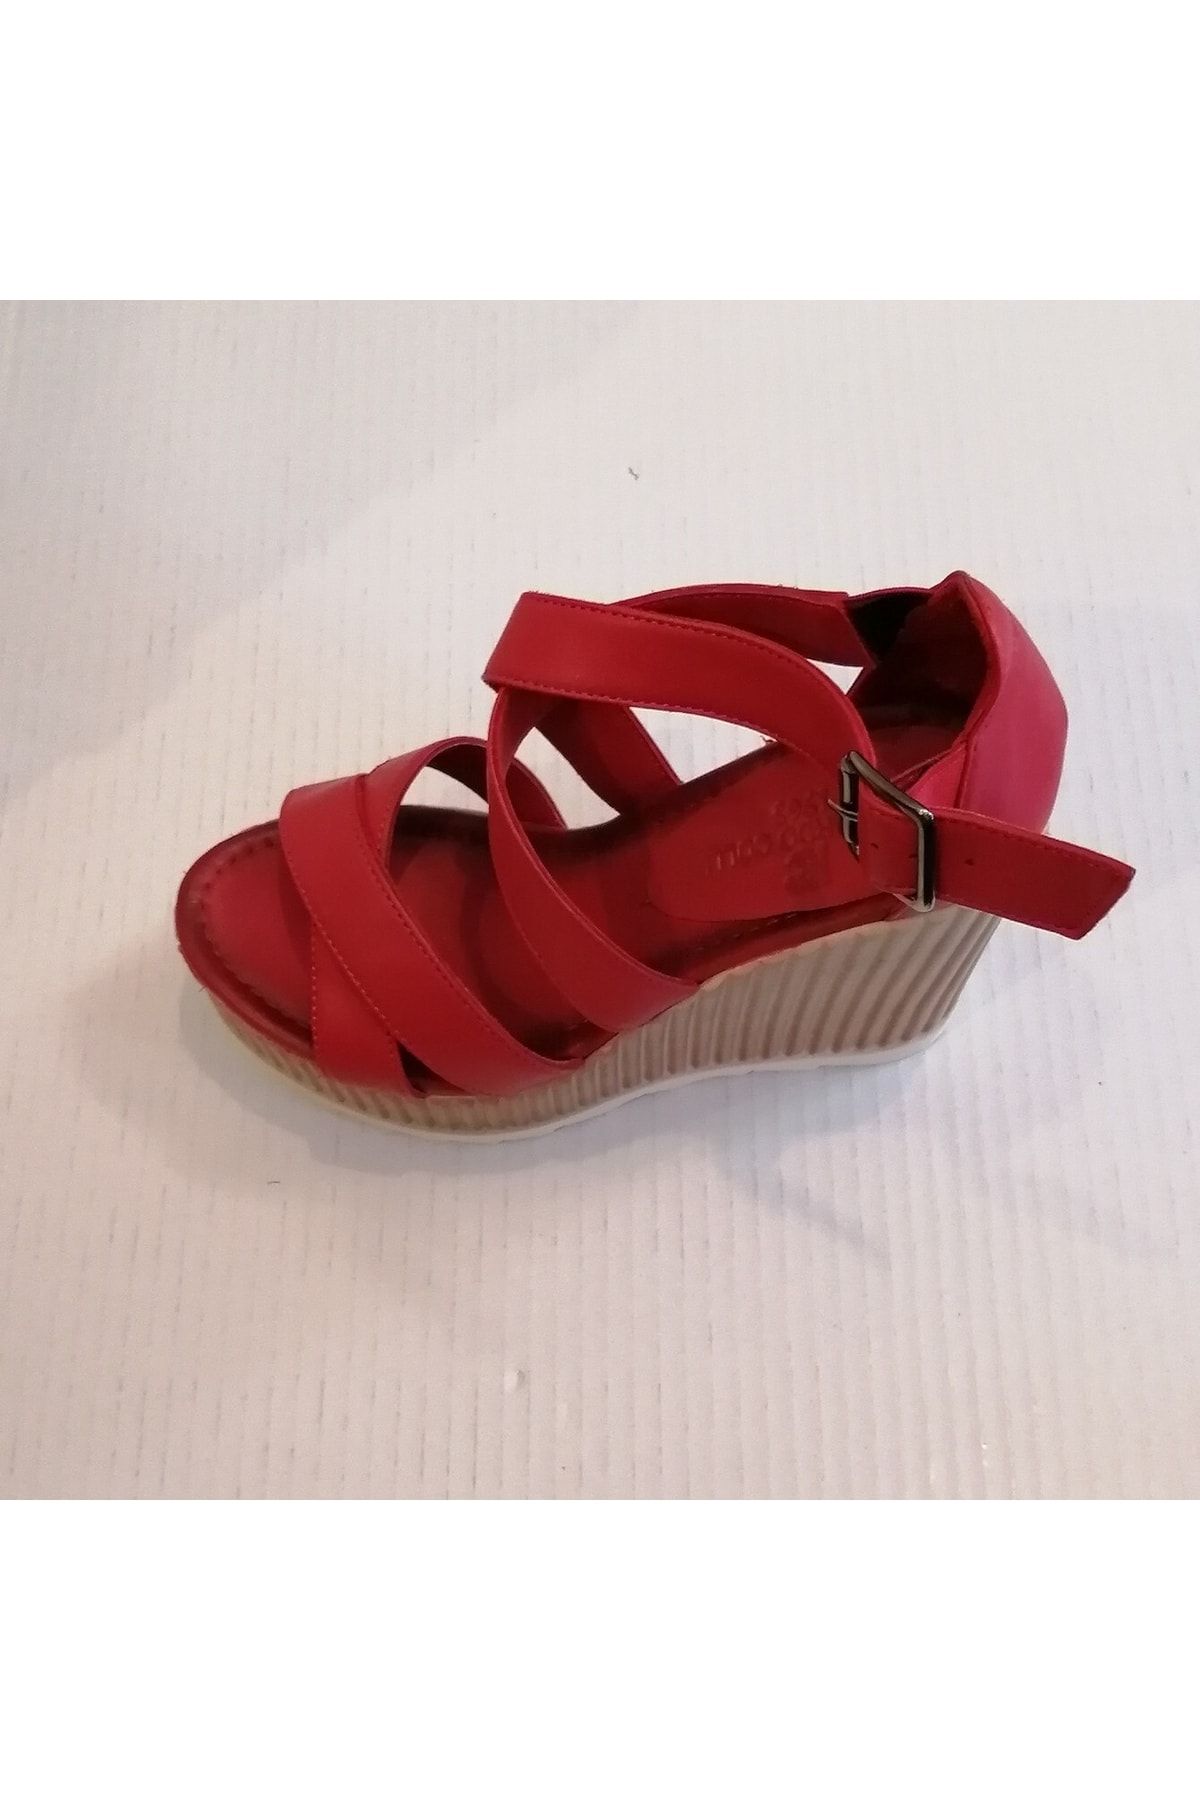 Riccardo Colli Kadın Hakiki Deri Kırmızı Yumuşak Çift Çapraz Bantlı Bilekten Tokalı Dolgu Topuklu Platform Sandalet